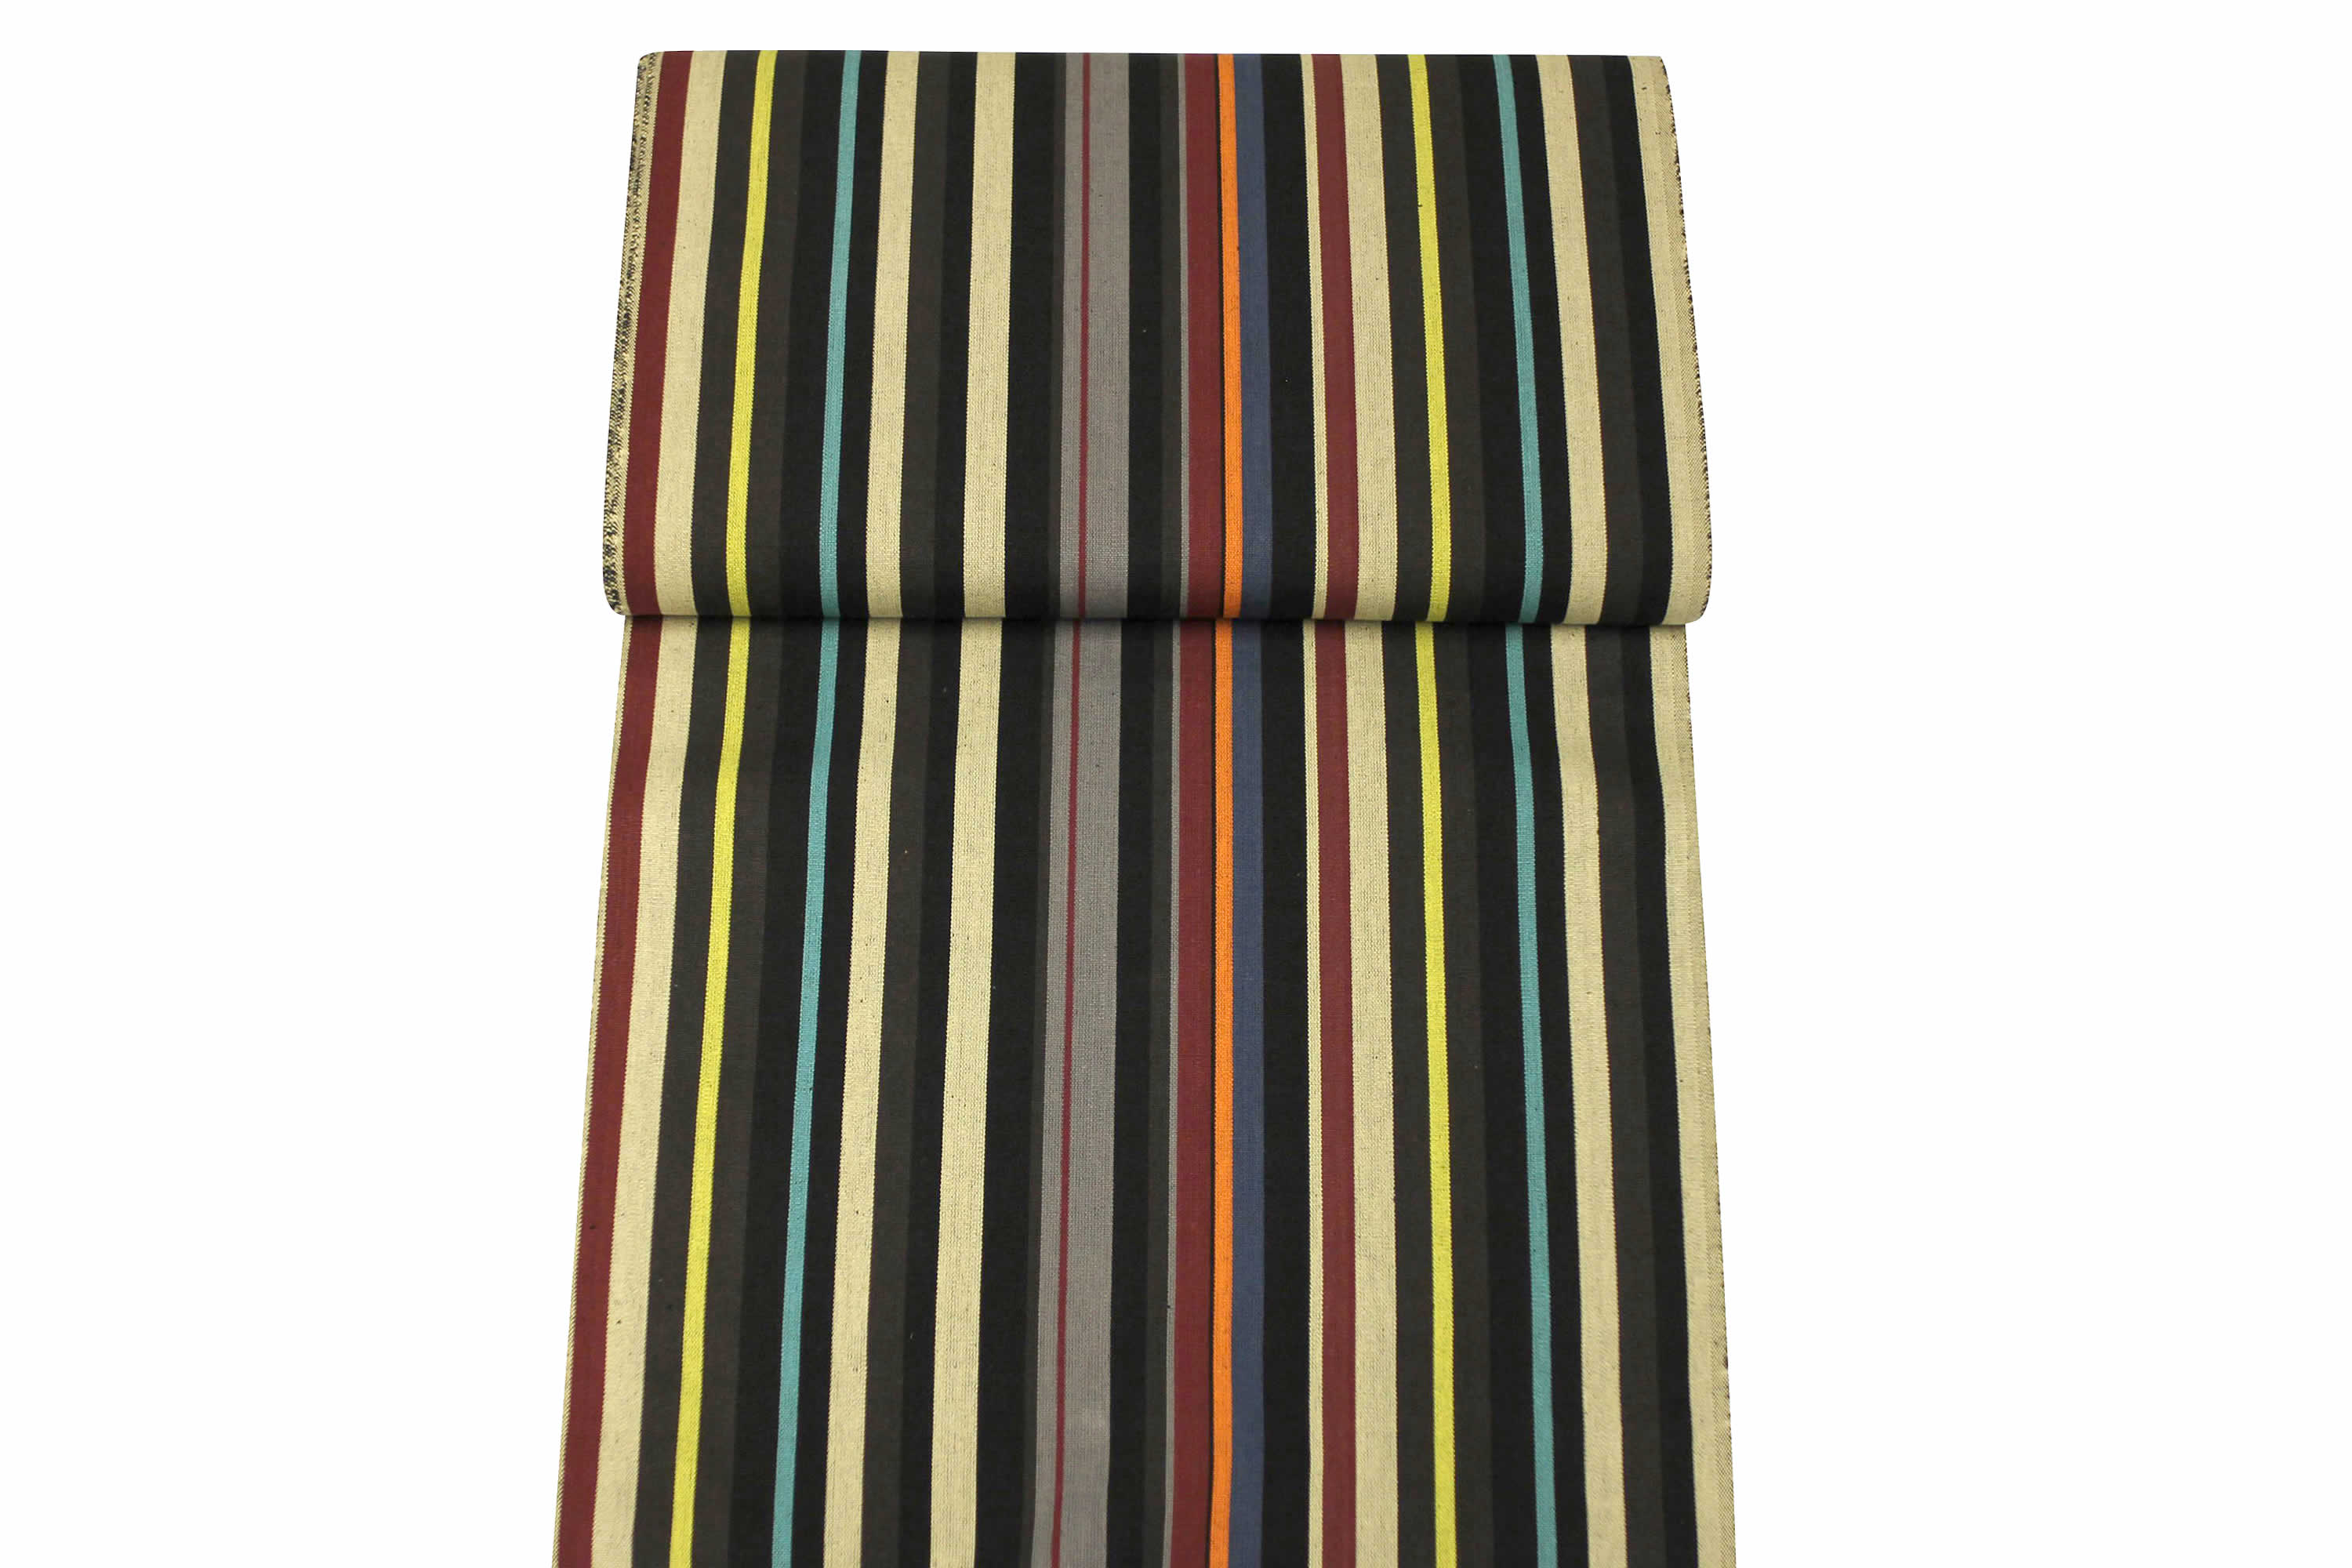 Black Striped Deckchair Canvas Fabric